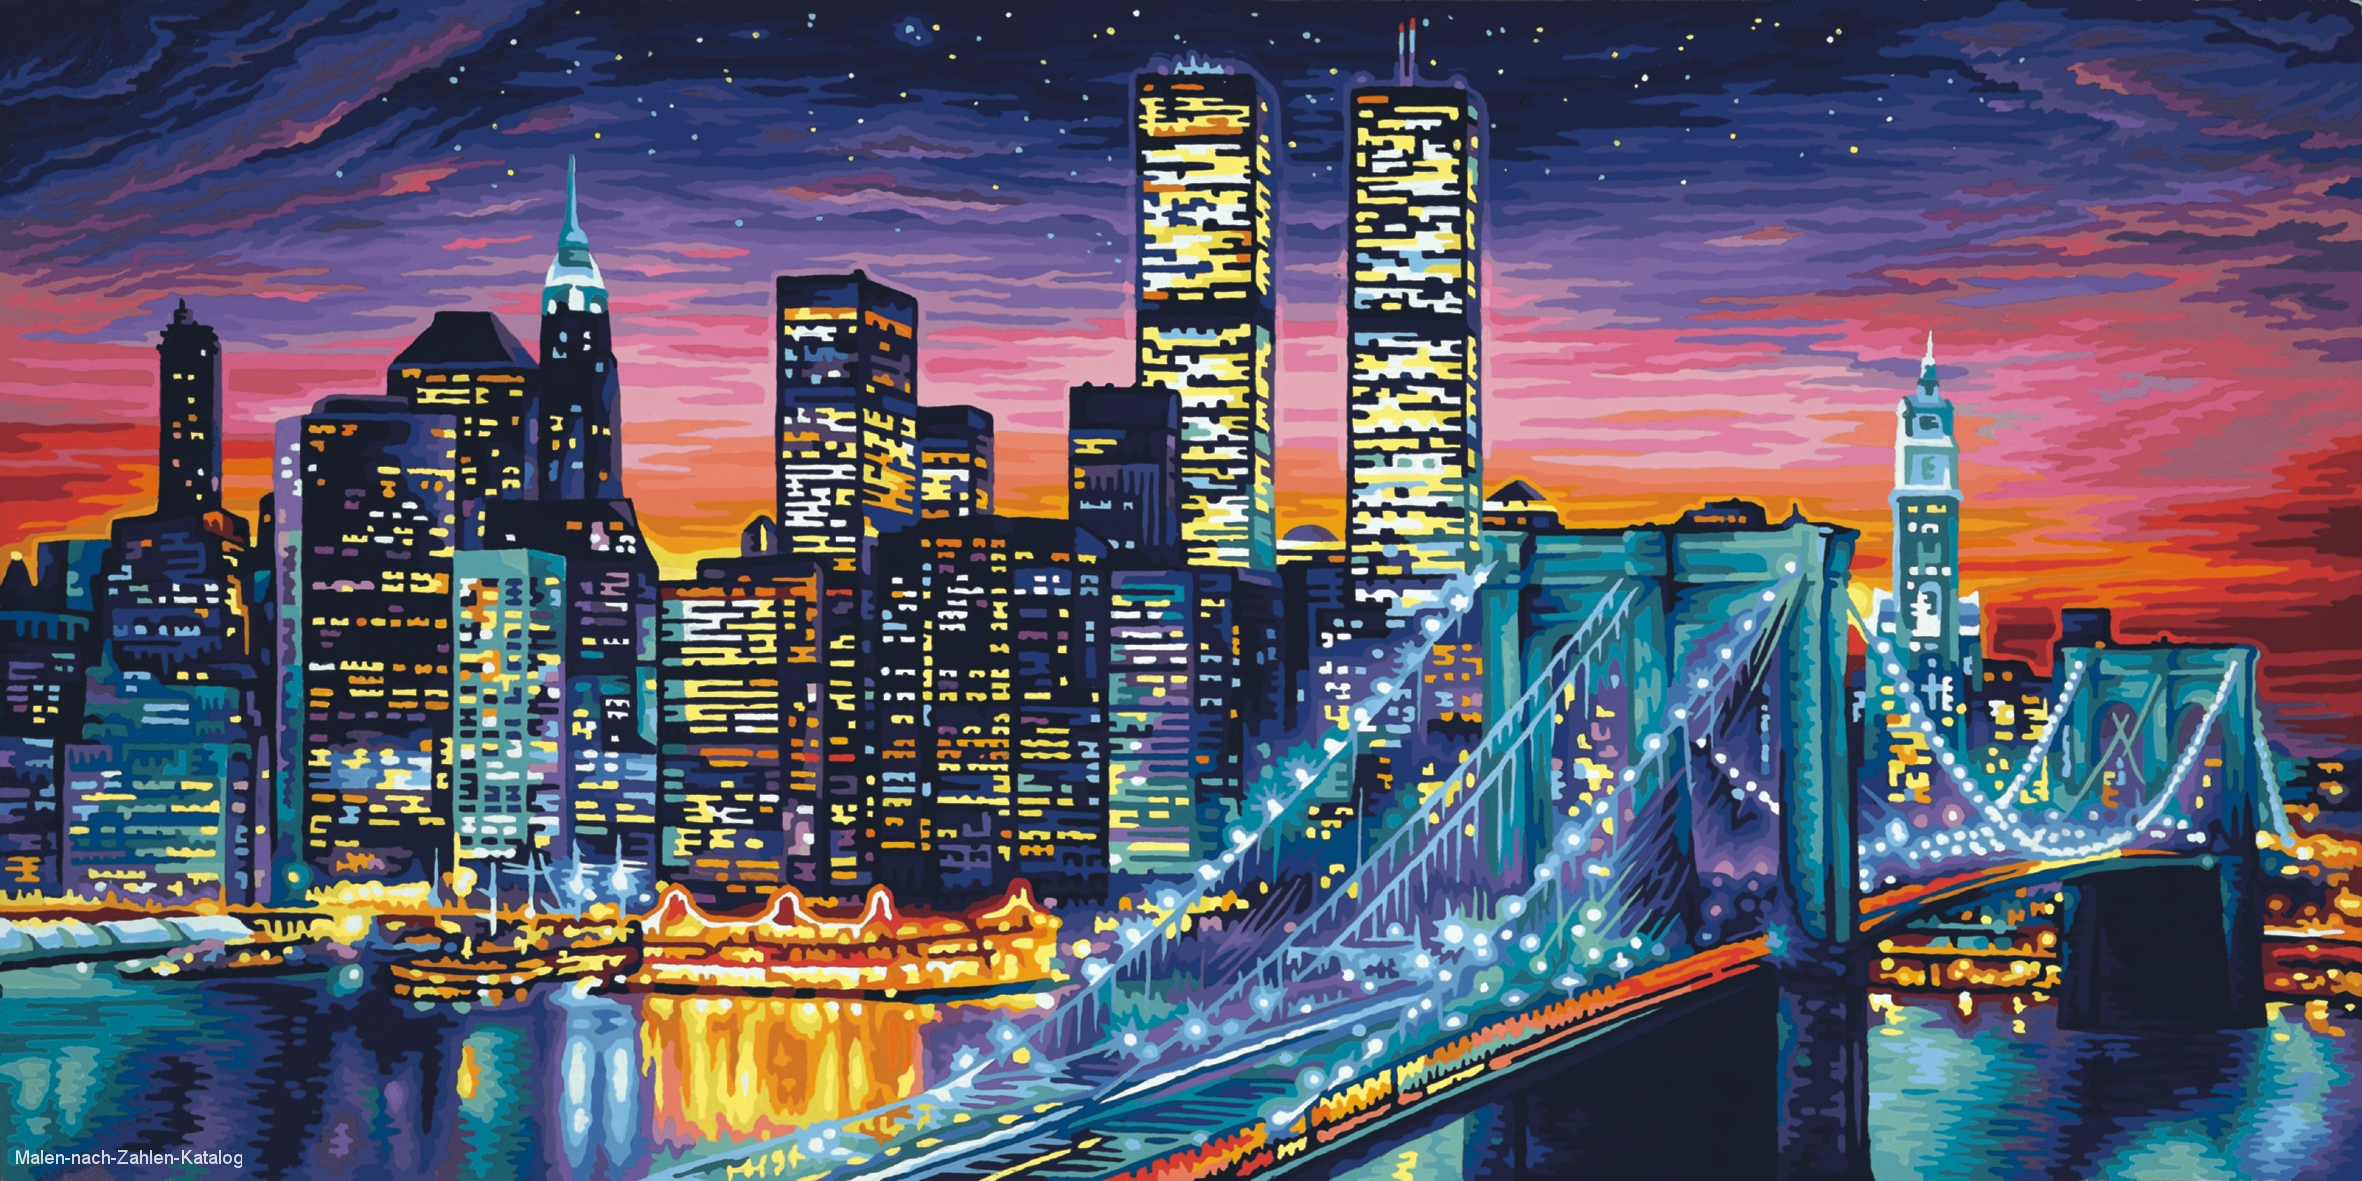 Schipper Malen nach Zahlen - Manhattan bei Nacht